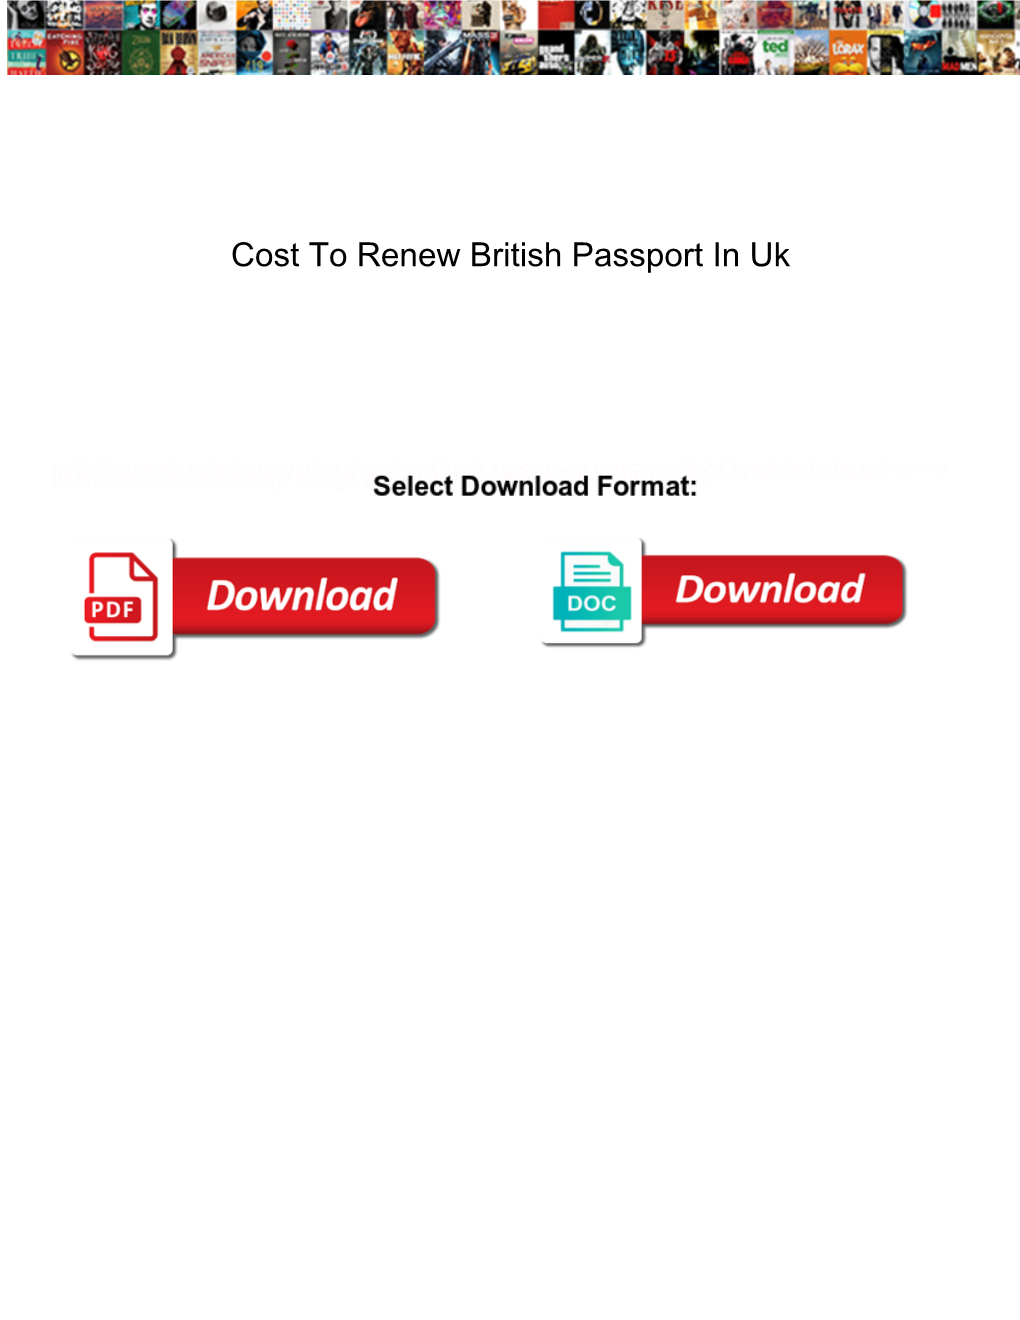 Cost to Renew British Passport in Uk